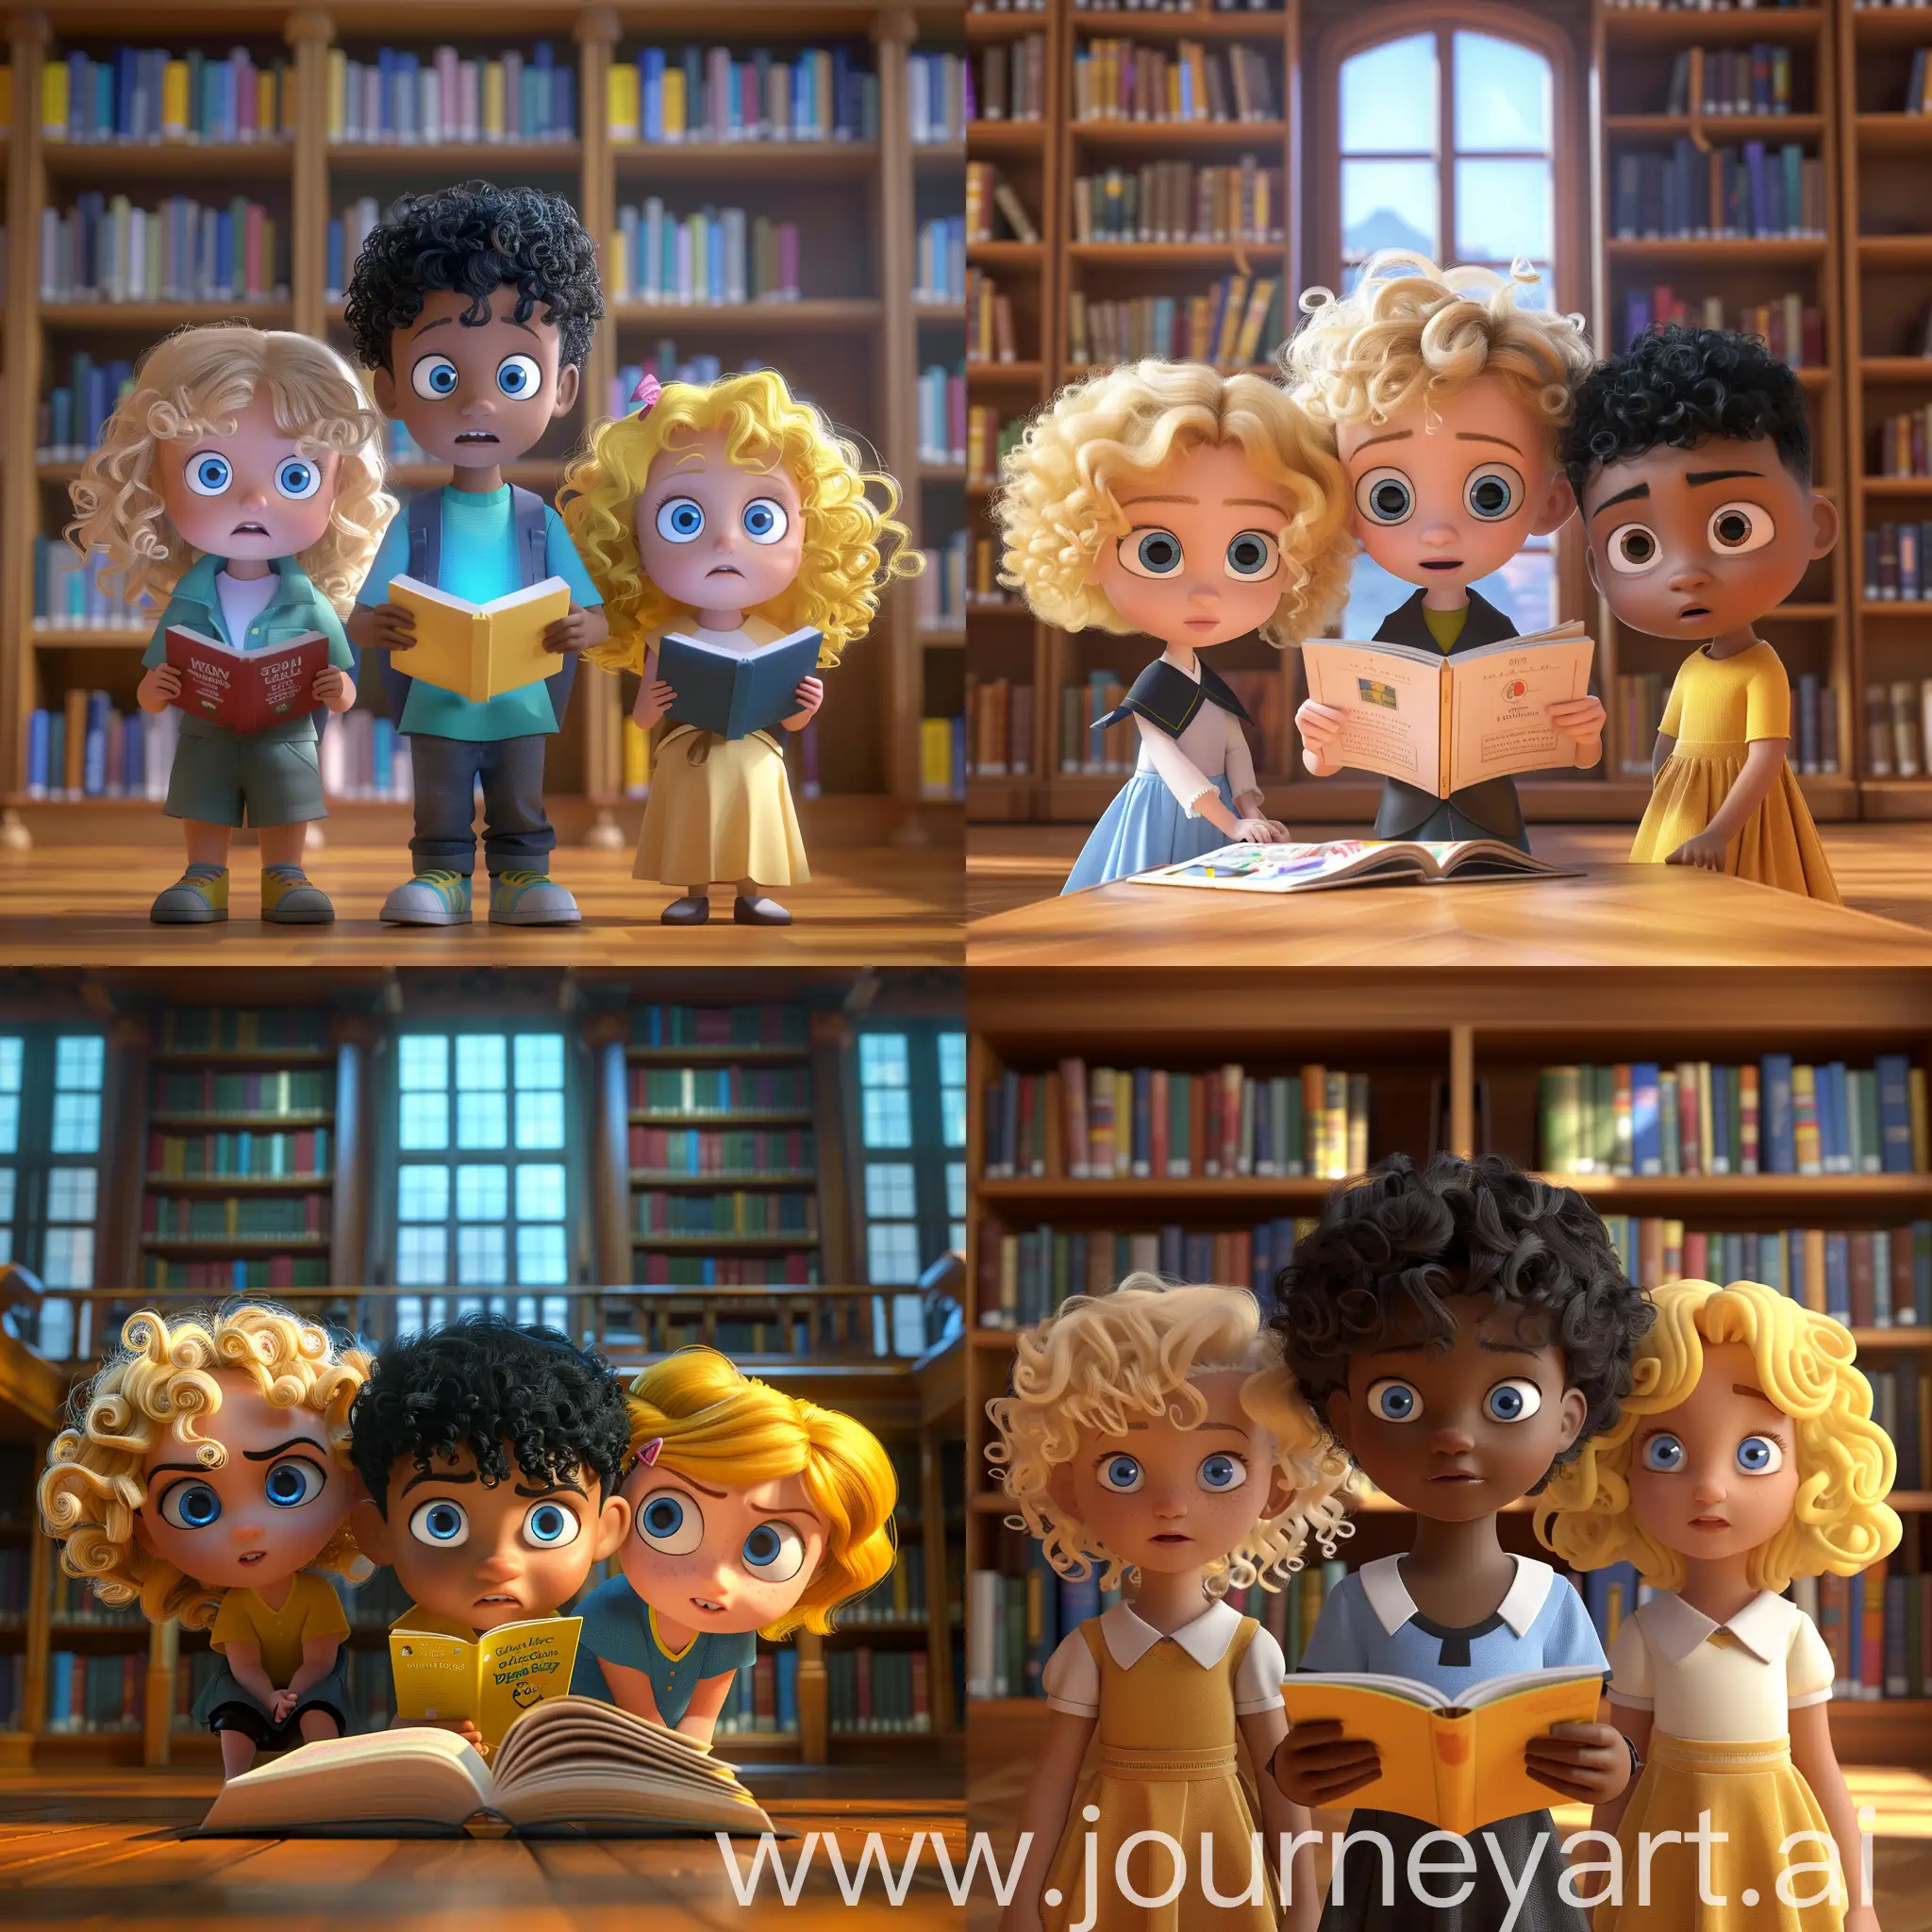 1个6岁女孩（金色卷发，蓝眼睛），1个6岁小男孩（黑色短发，蓝眼睛），1个6岁女孩（黄色卷发，蓝眼睛），在图书馆，看书，全身正面拍摄，皮克斯风格